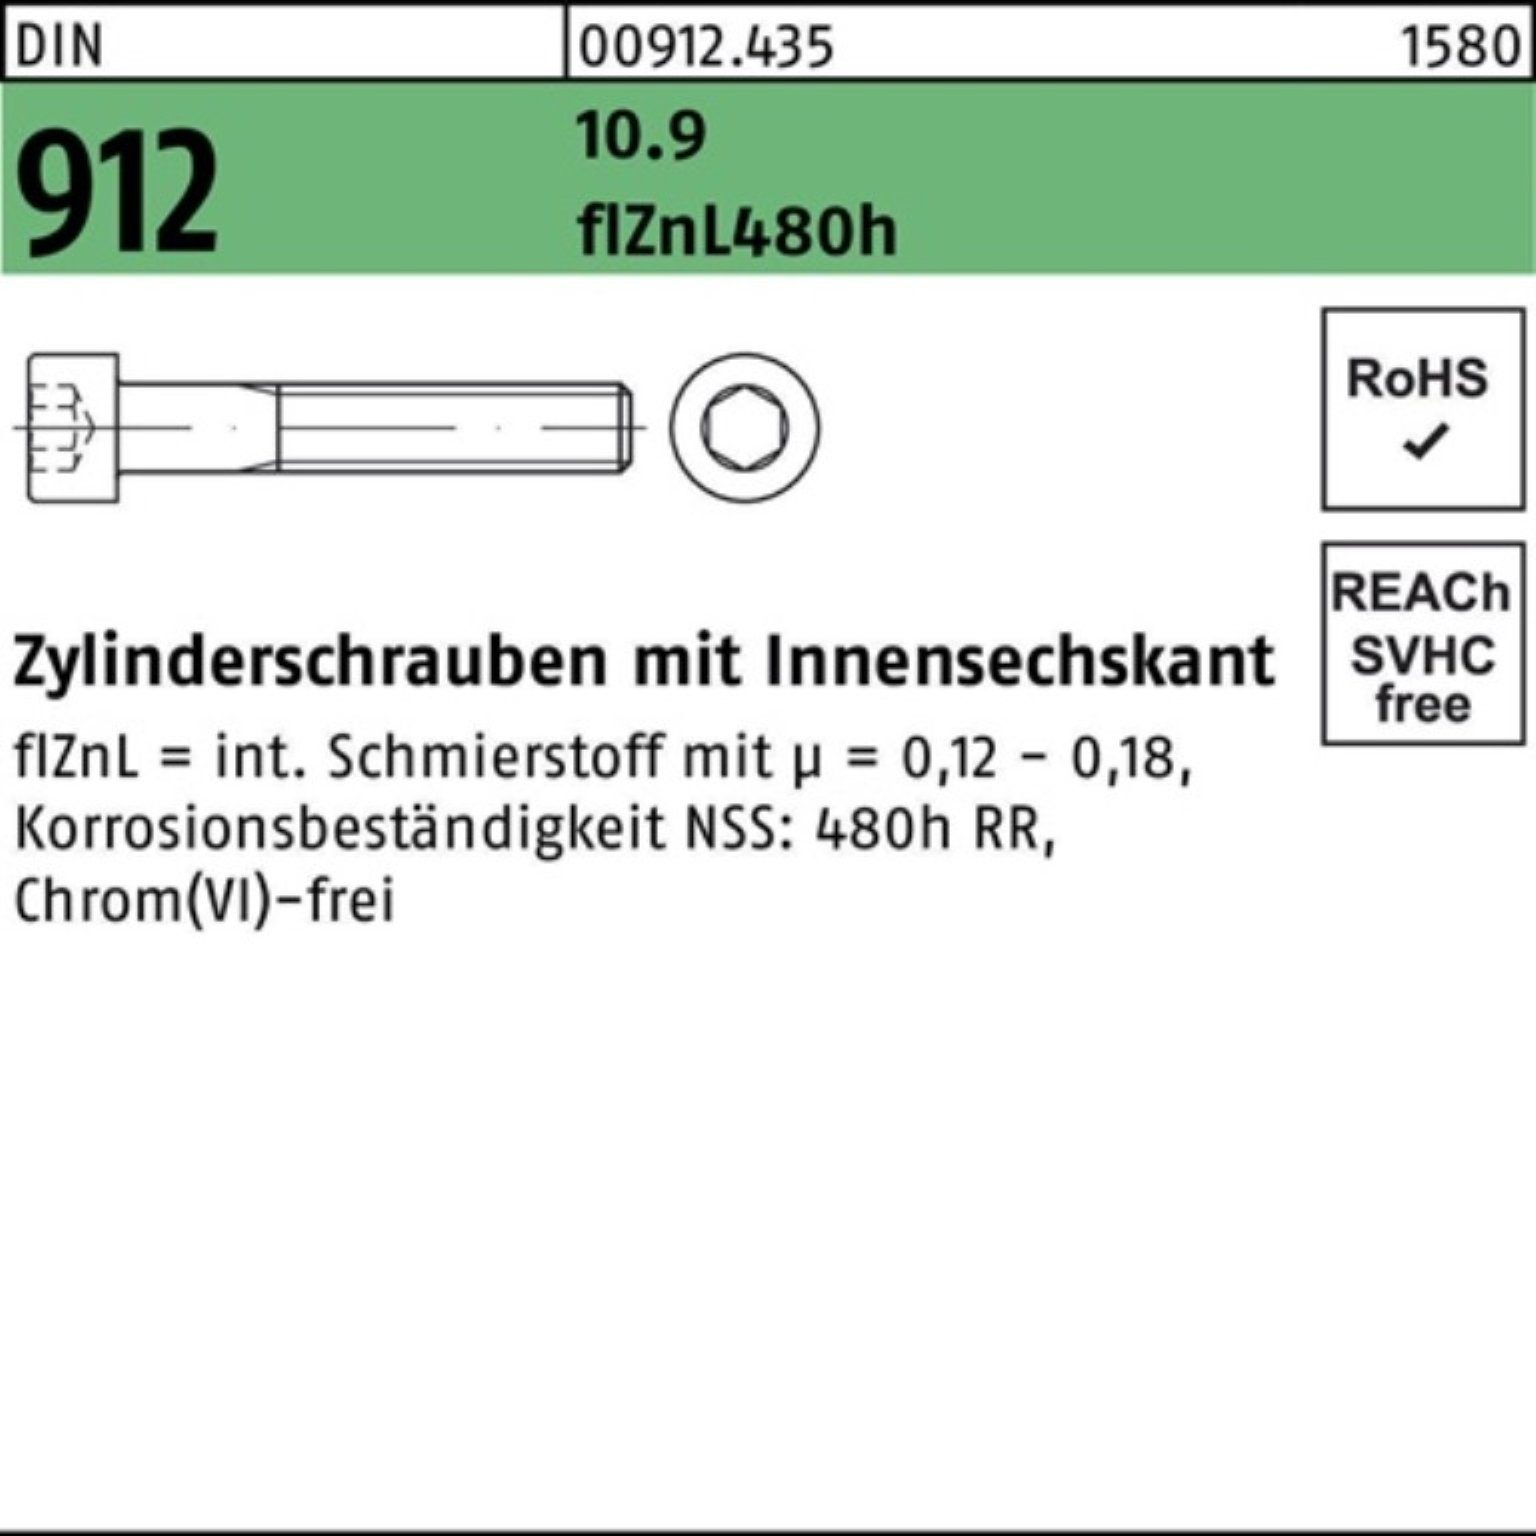 10.9 Reyher DIN 500er Zylinderschraube Zylinderschraube M6x12 Pack Innen-6kt 912 flZnL/nc/x/x